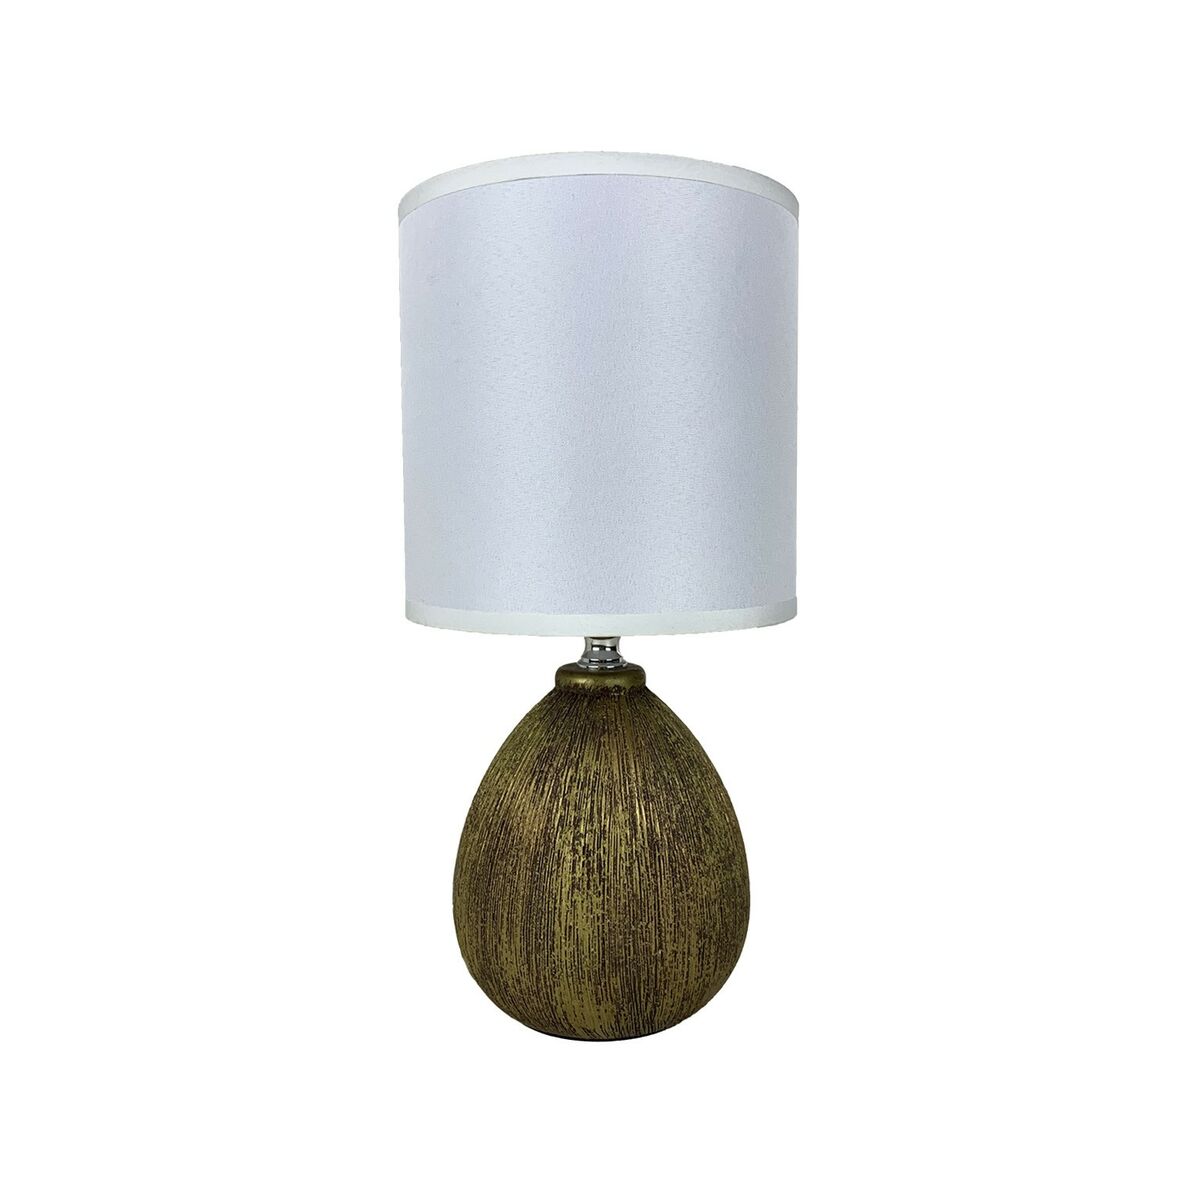 Table lamp Versa Lua brown ceramic